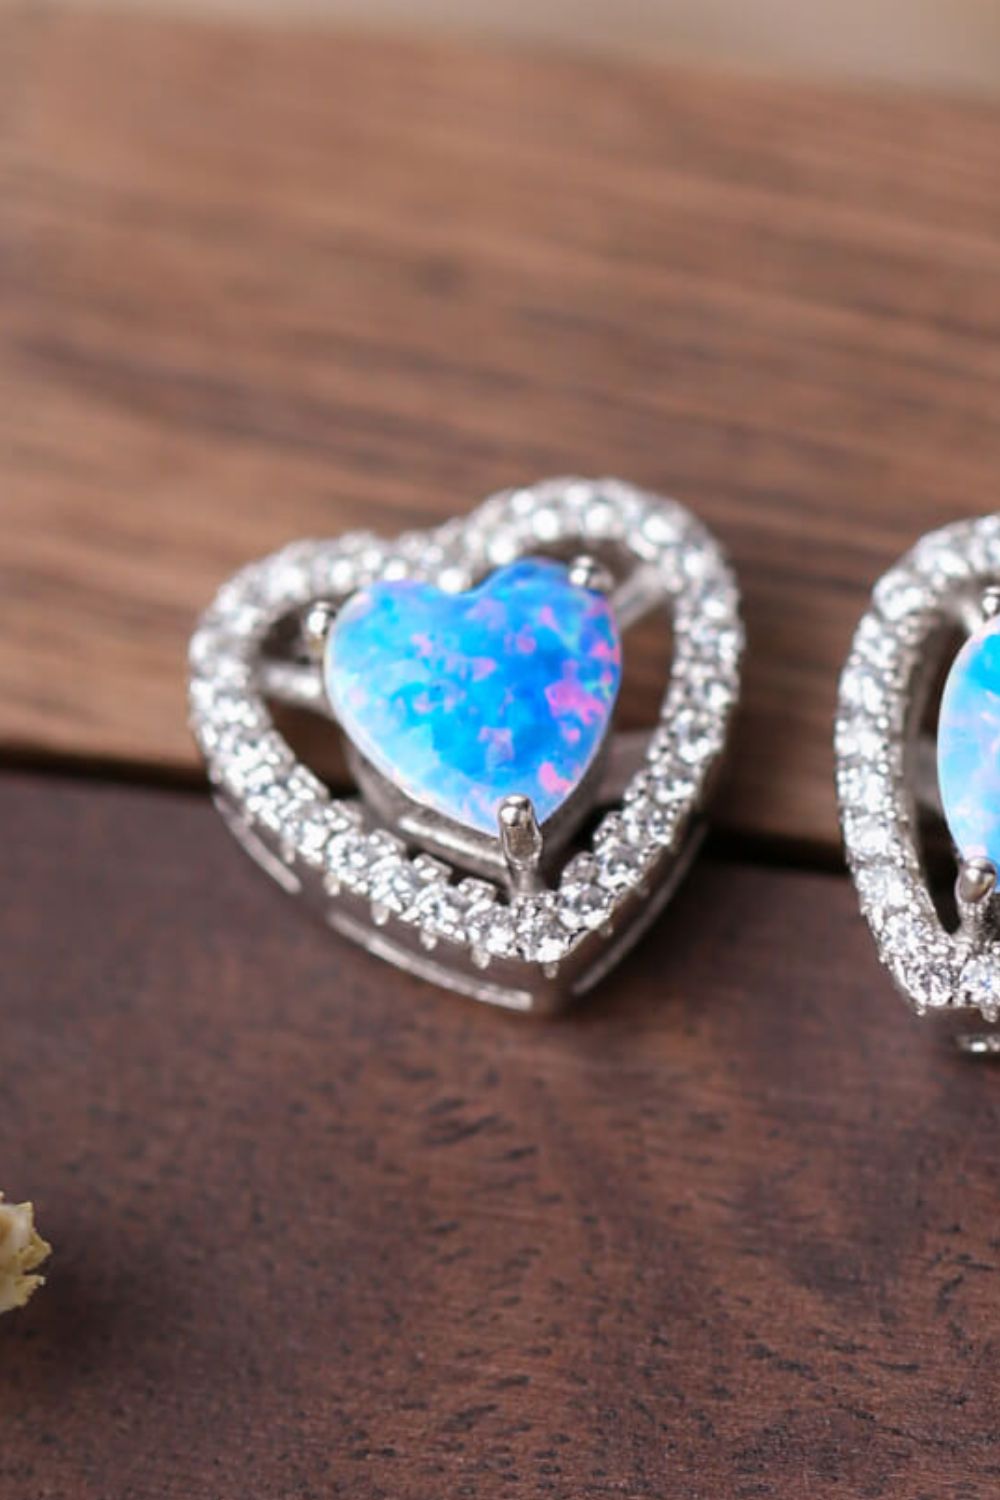 925 Sterling Silver Opal Heart Stud Earrings - Shop women apparel, Jewelry, bath & beauty products online - Arwen's Boutique